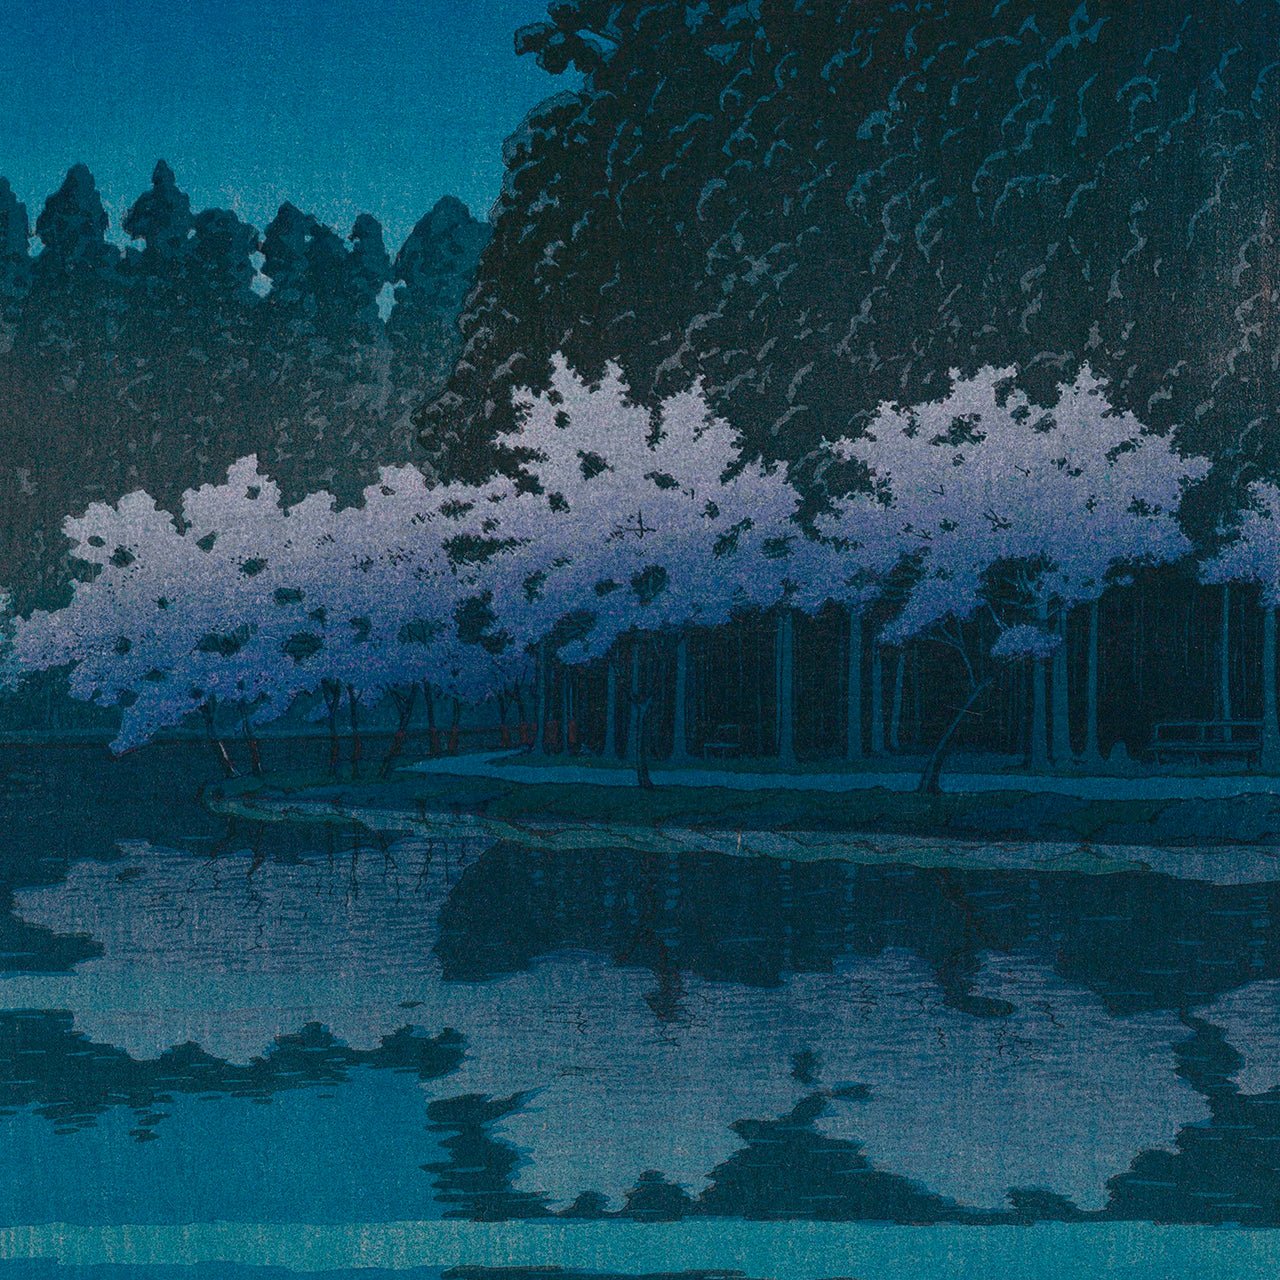 Spring Night at Inokashira - Japonica Graphic